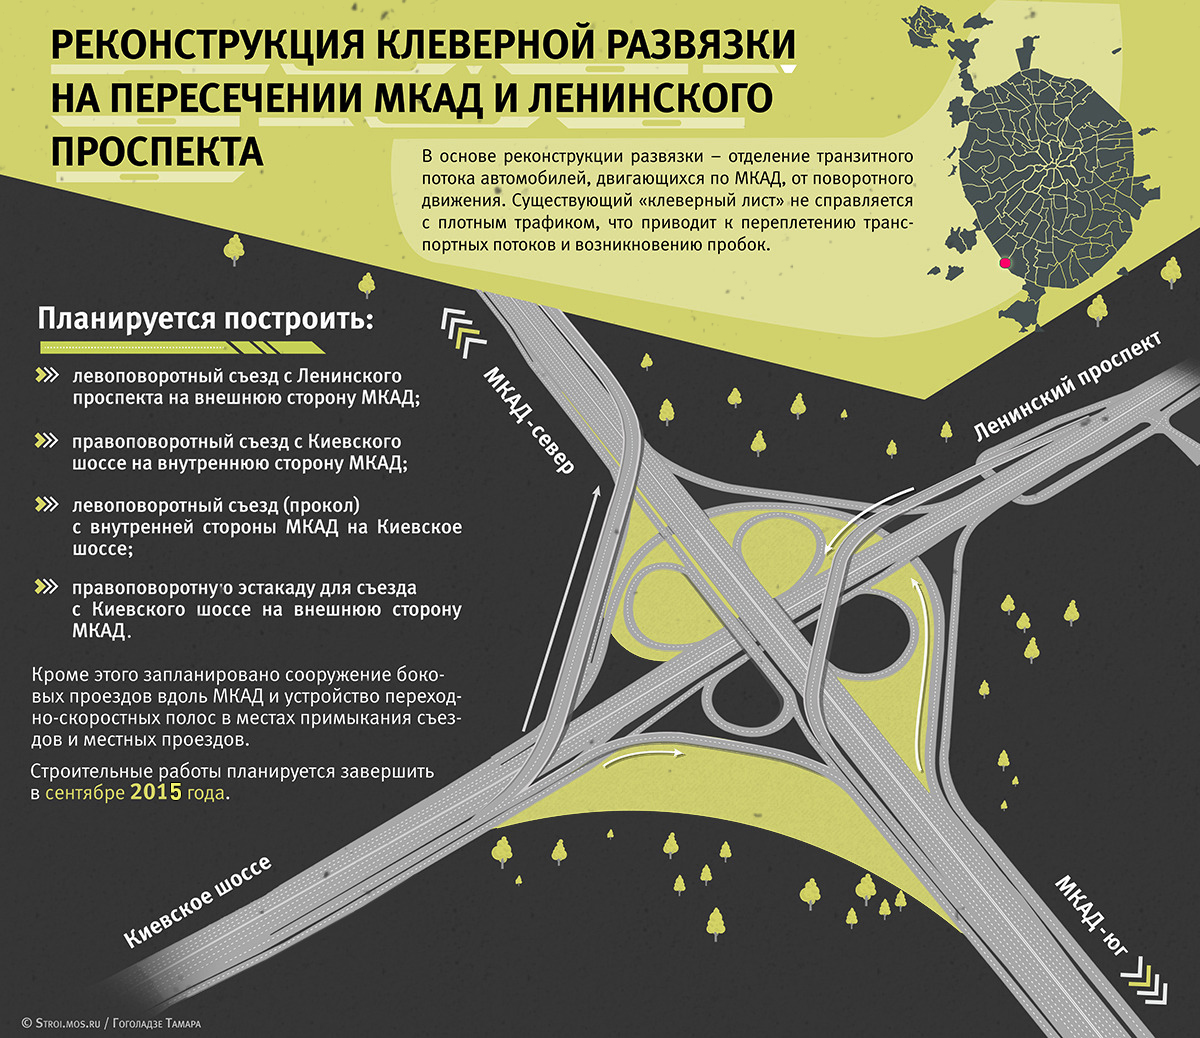 Транспортная развязка на пересечении Ленинского проспекта и МКАД поедет свободнее в сентябре 2015 года.